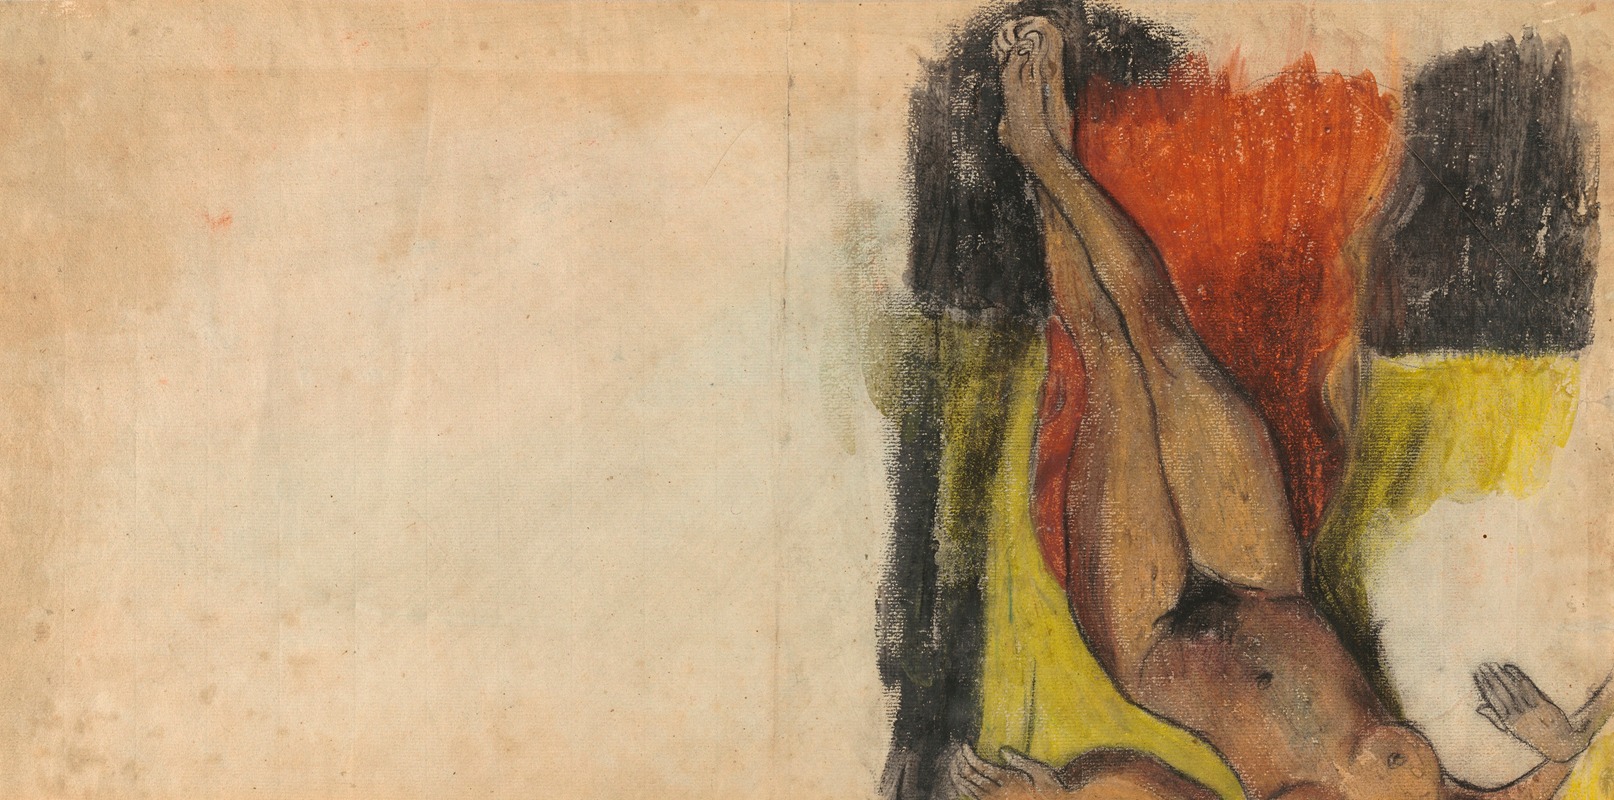 Paul Gauguin - Study for Aita tamari vahine Judith te parari II